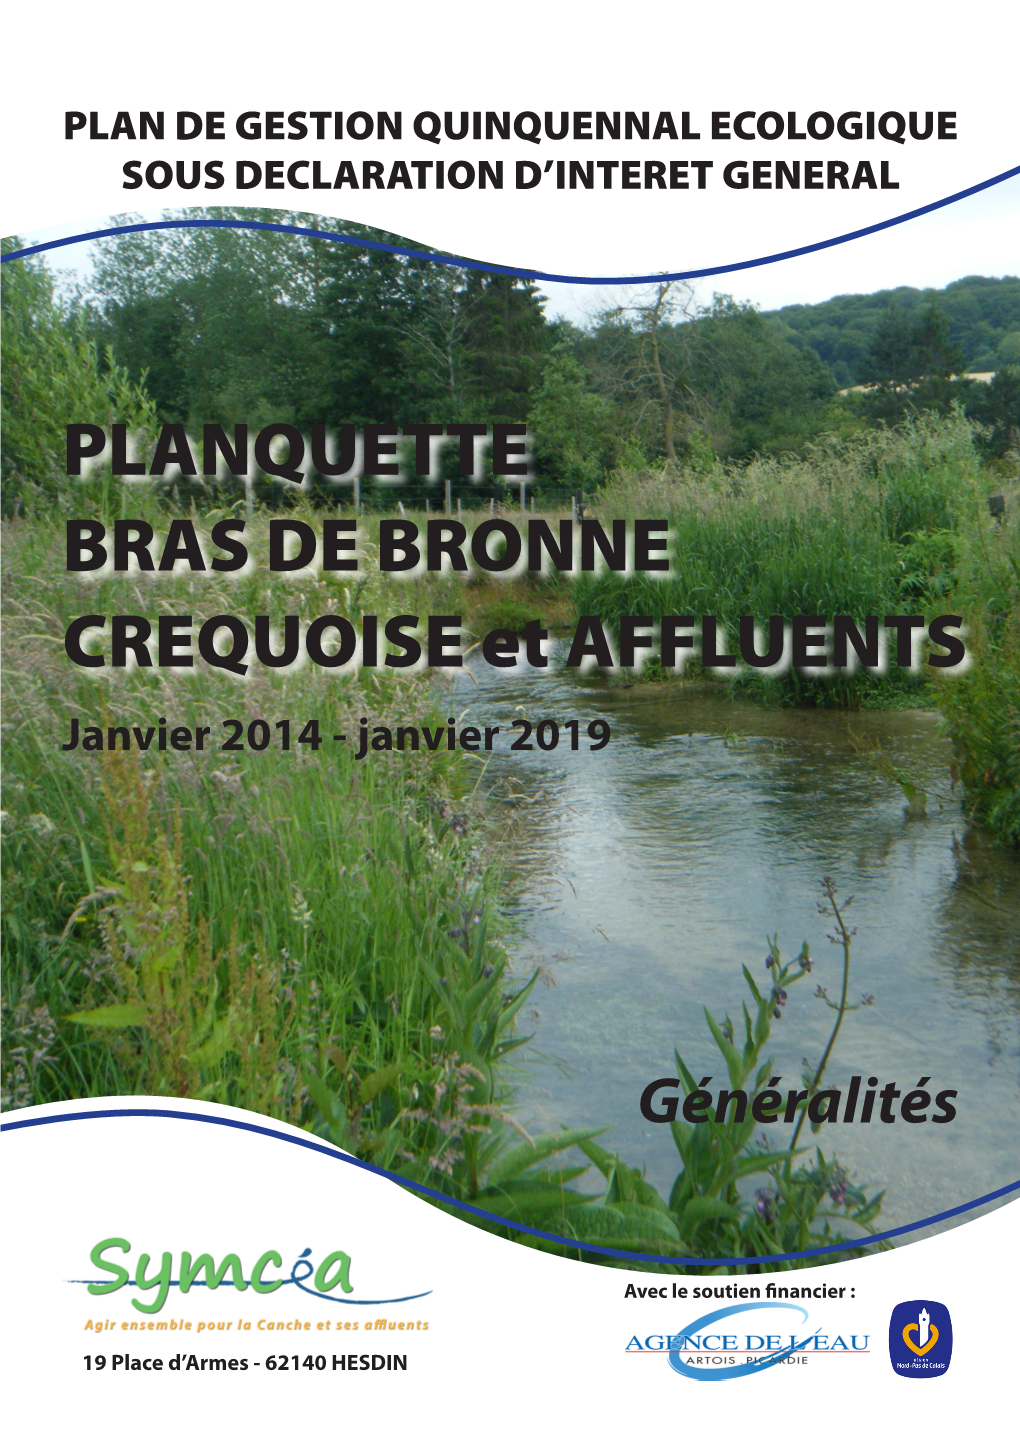 PLANQUETTE BRAS DE BRONNE CREQUOISE Et AFFLUENTS Janvier 2014 - Janvier 2019